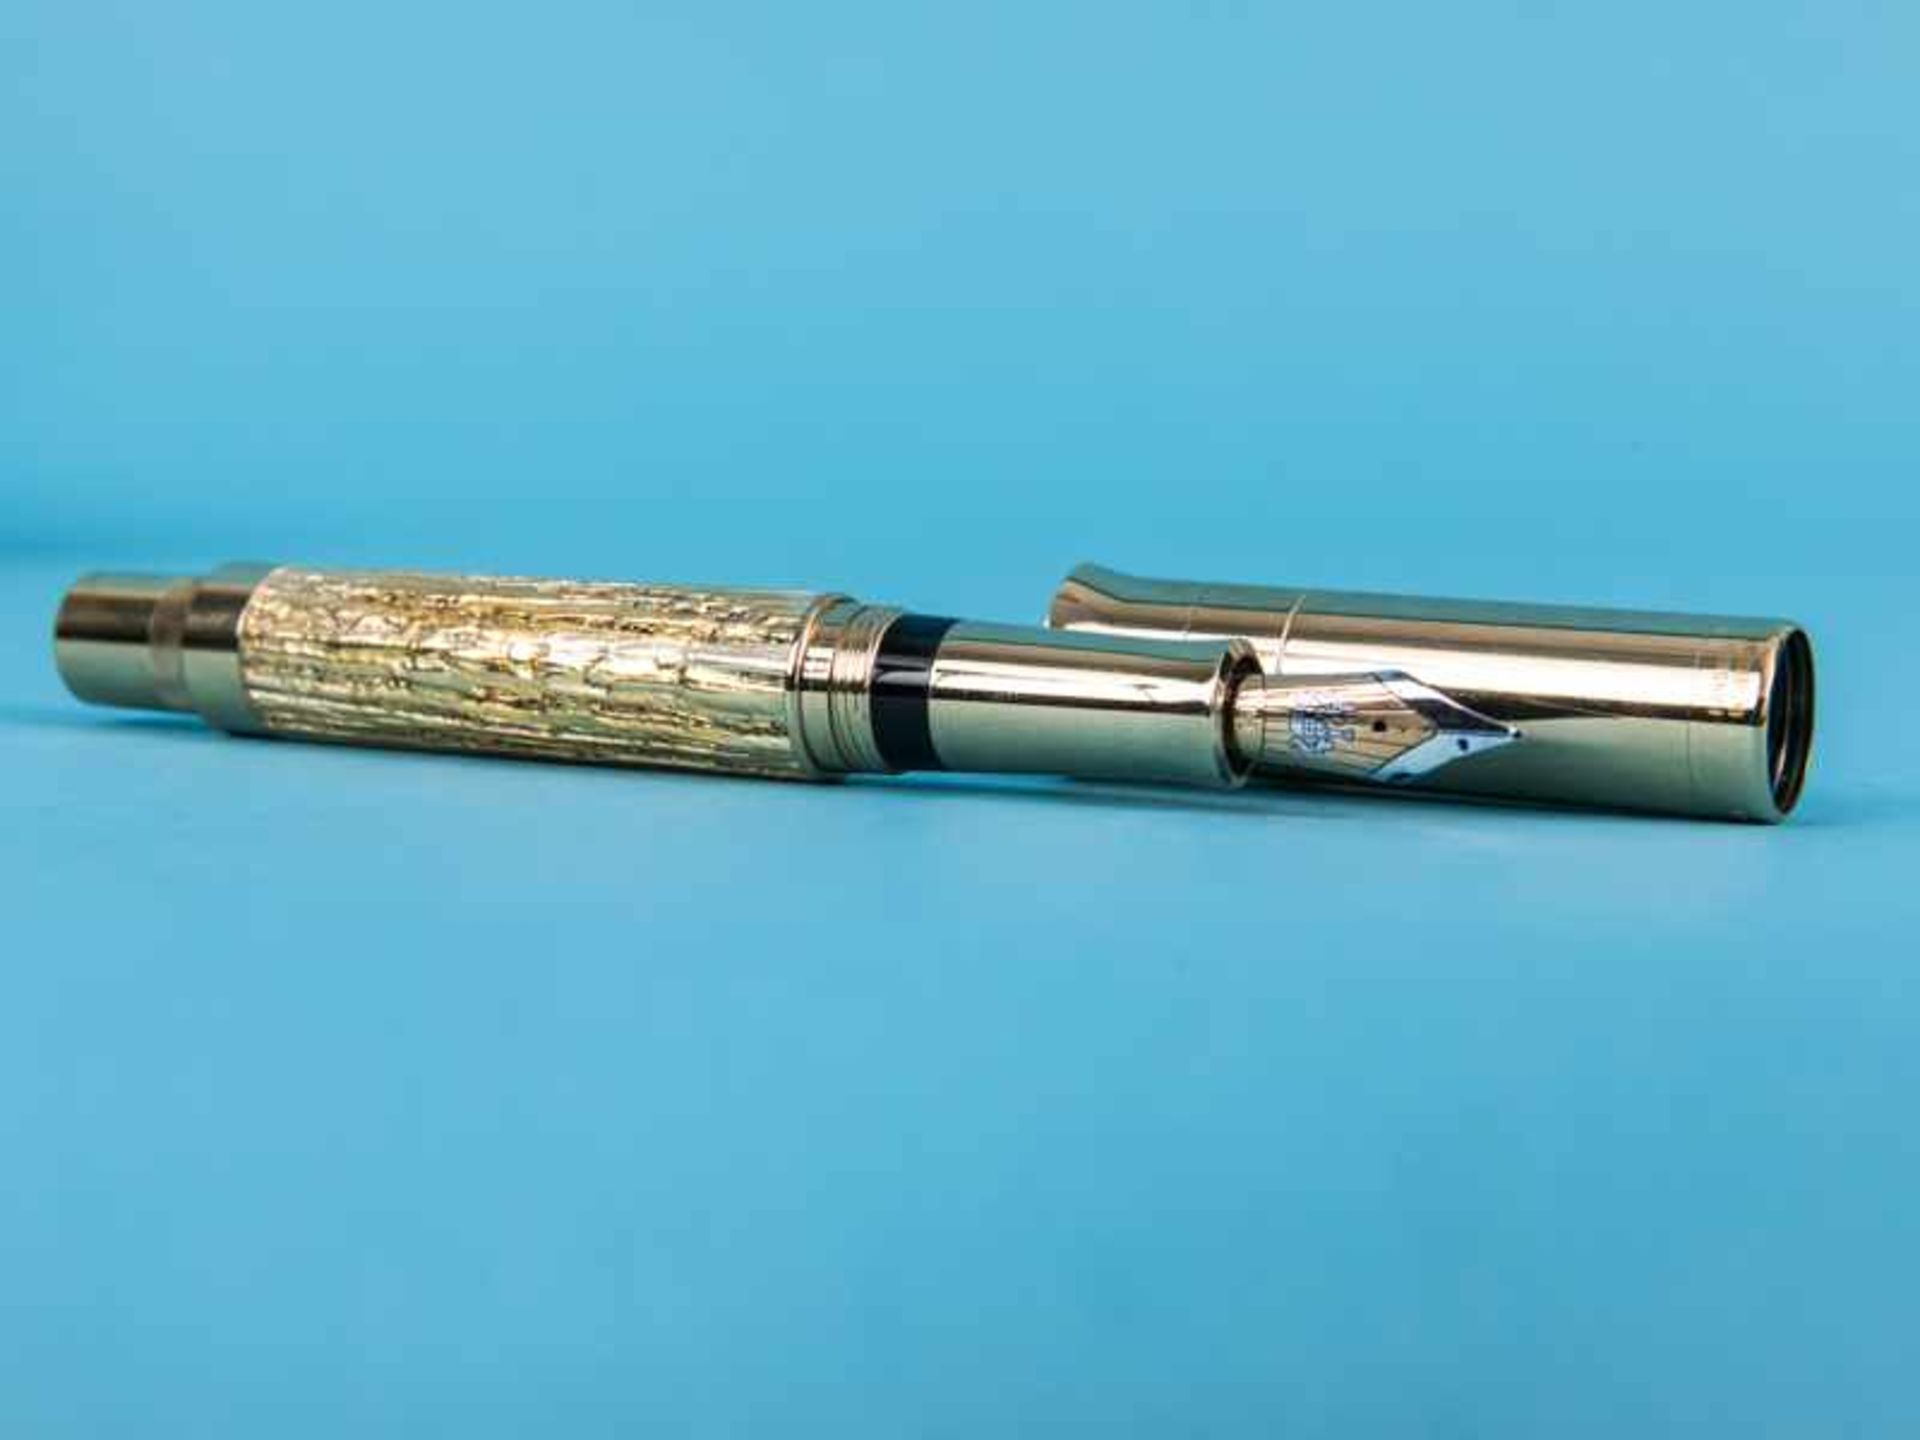 Kolben-Füllfederhalter "Pen of the Year" 2012, Handarbeit aus der Manufaktur Graf von Faber-Castell. - Image 8 of 10